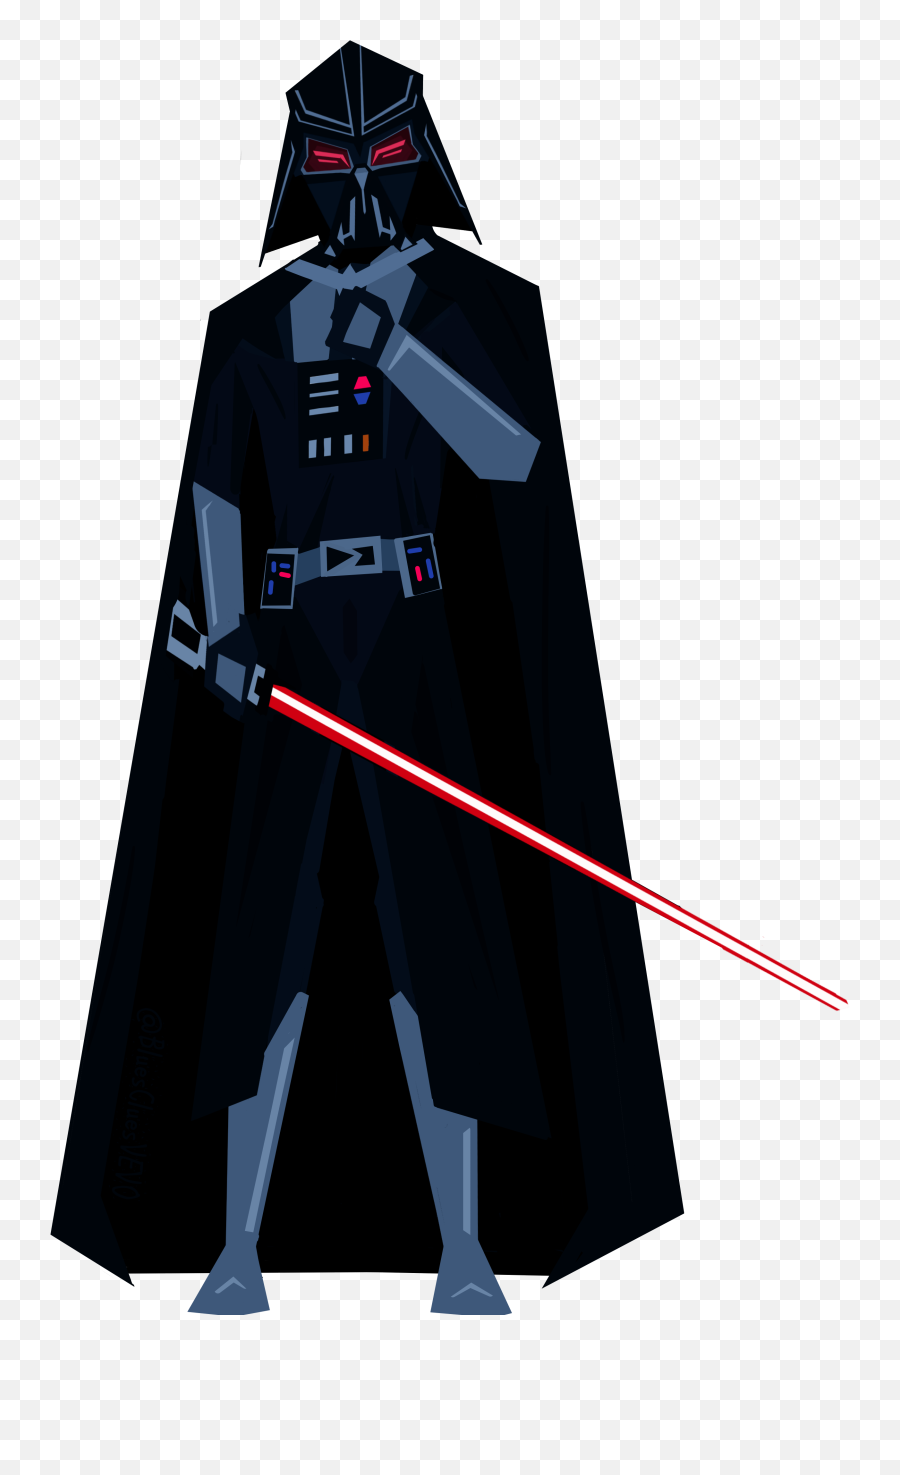 Drawing The Battlefront Day 15 Darth Vader Emoji,Star Wars Battlefront 2 Png